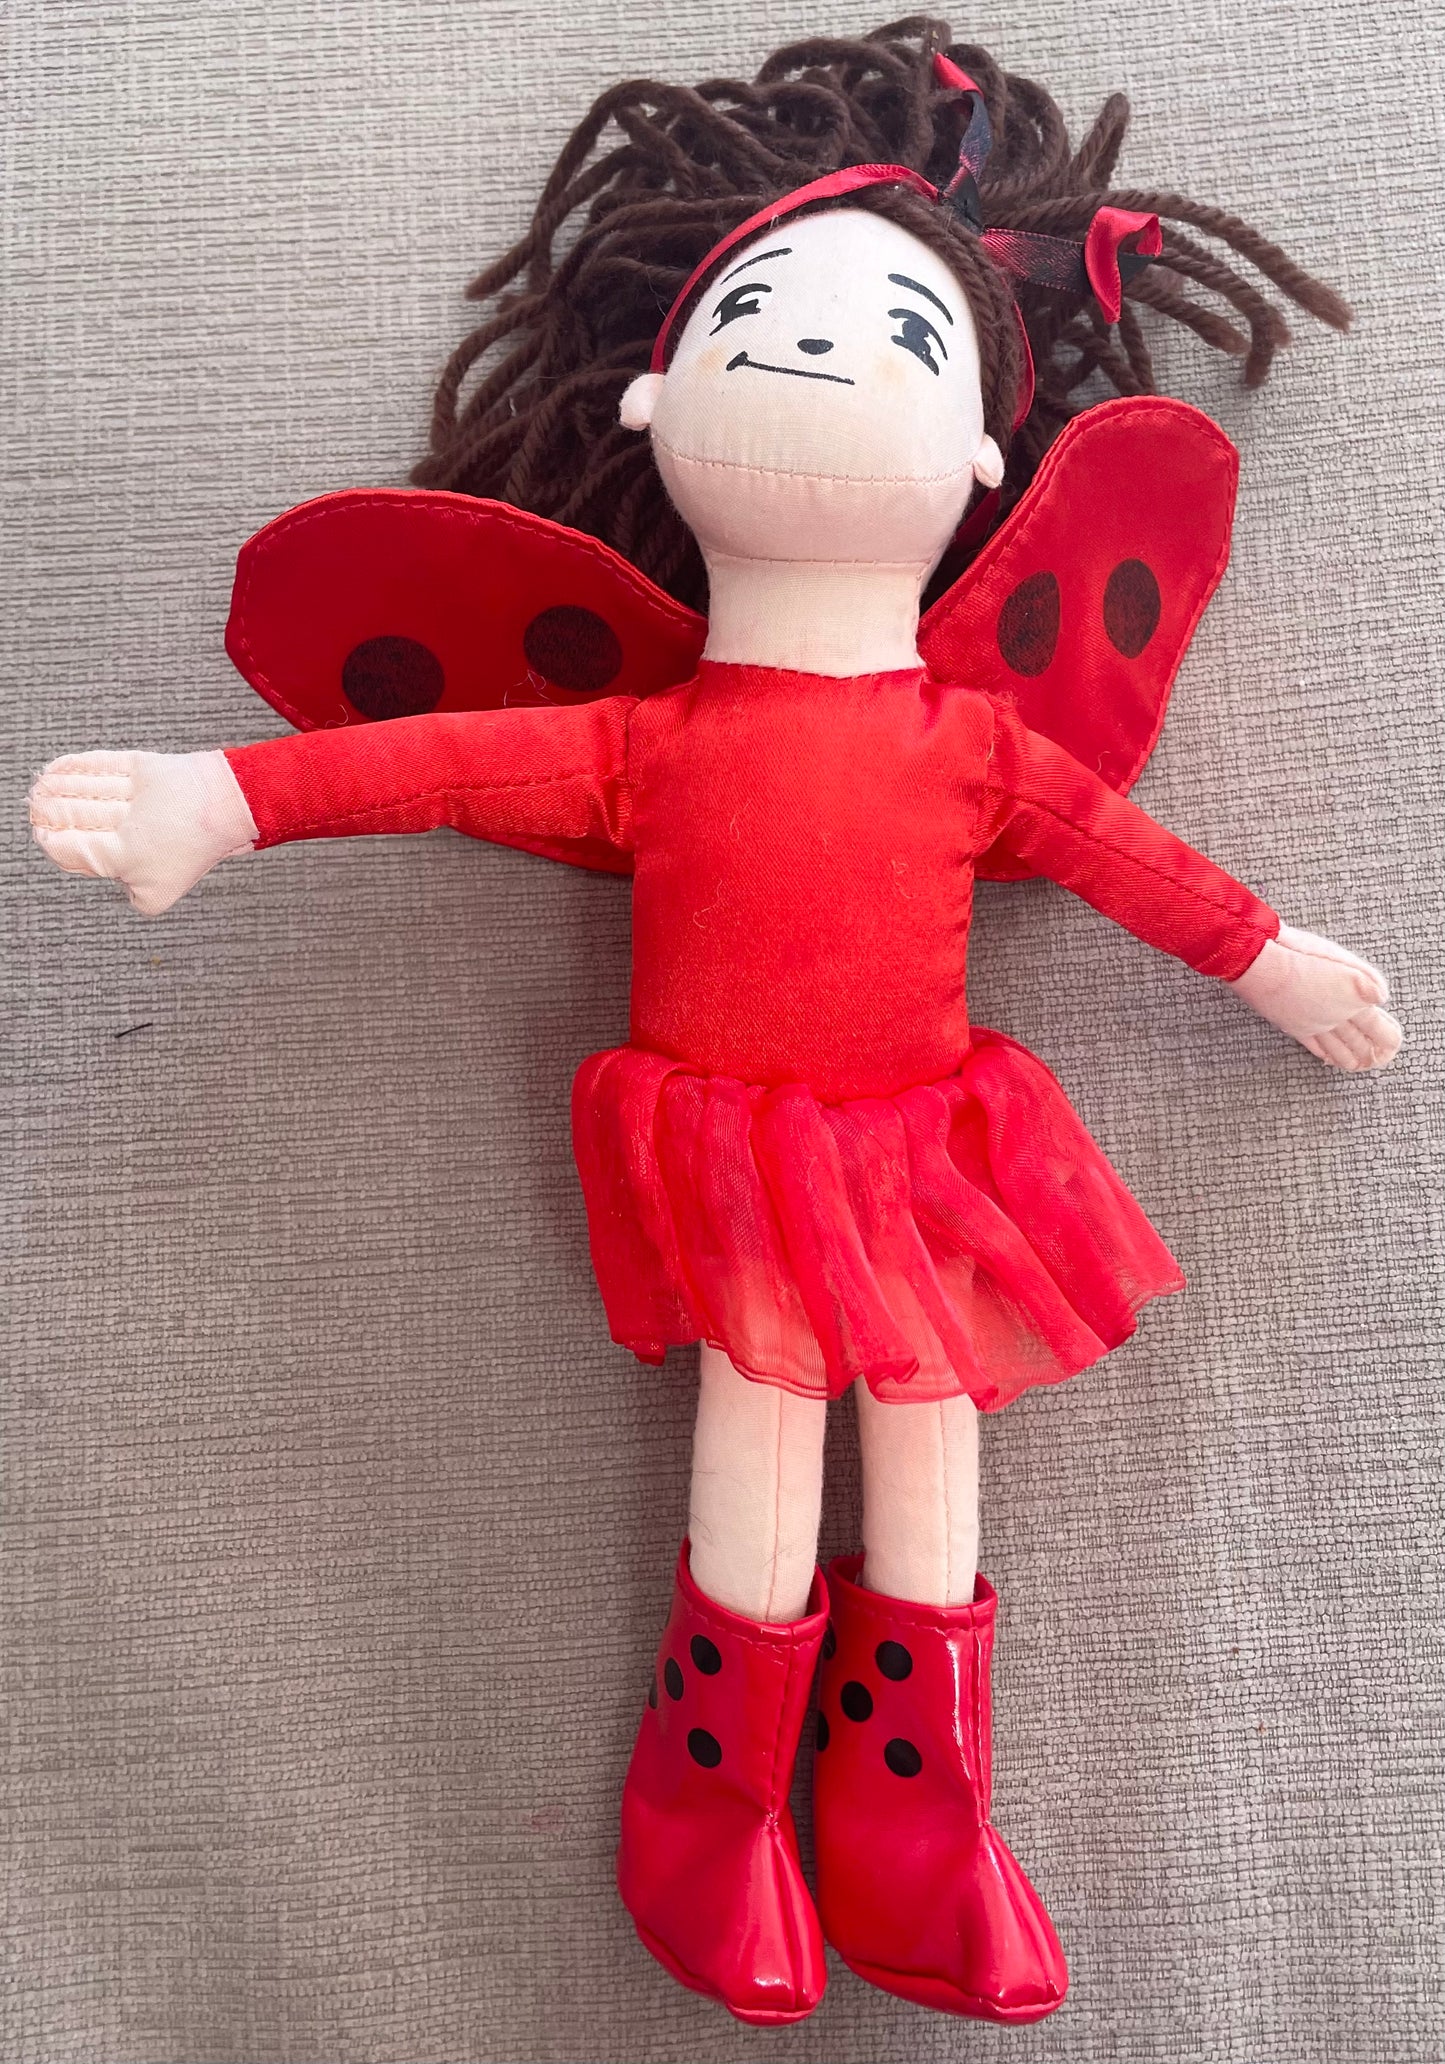 Ladybug girl doll